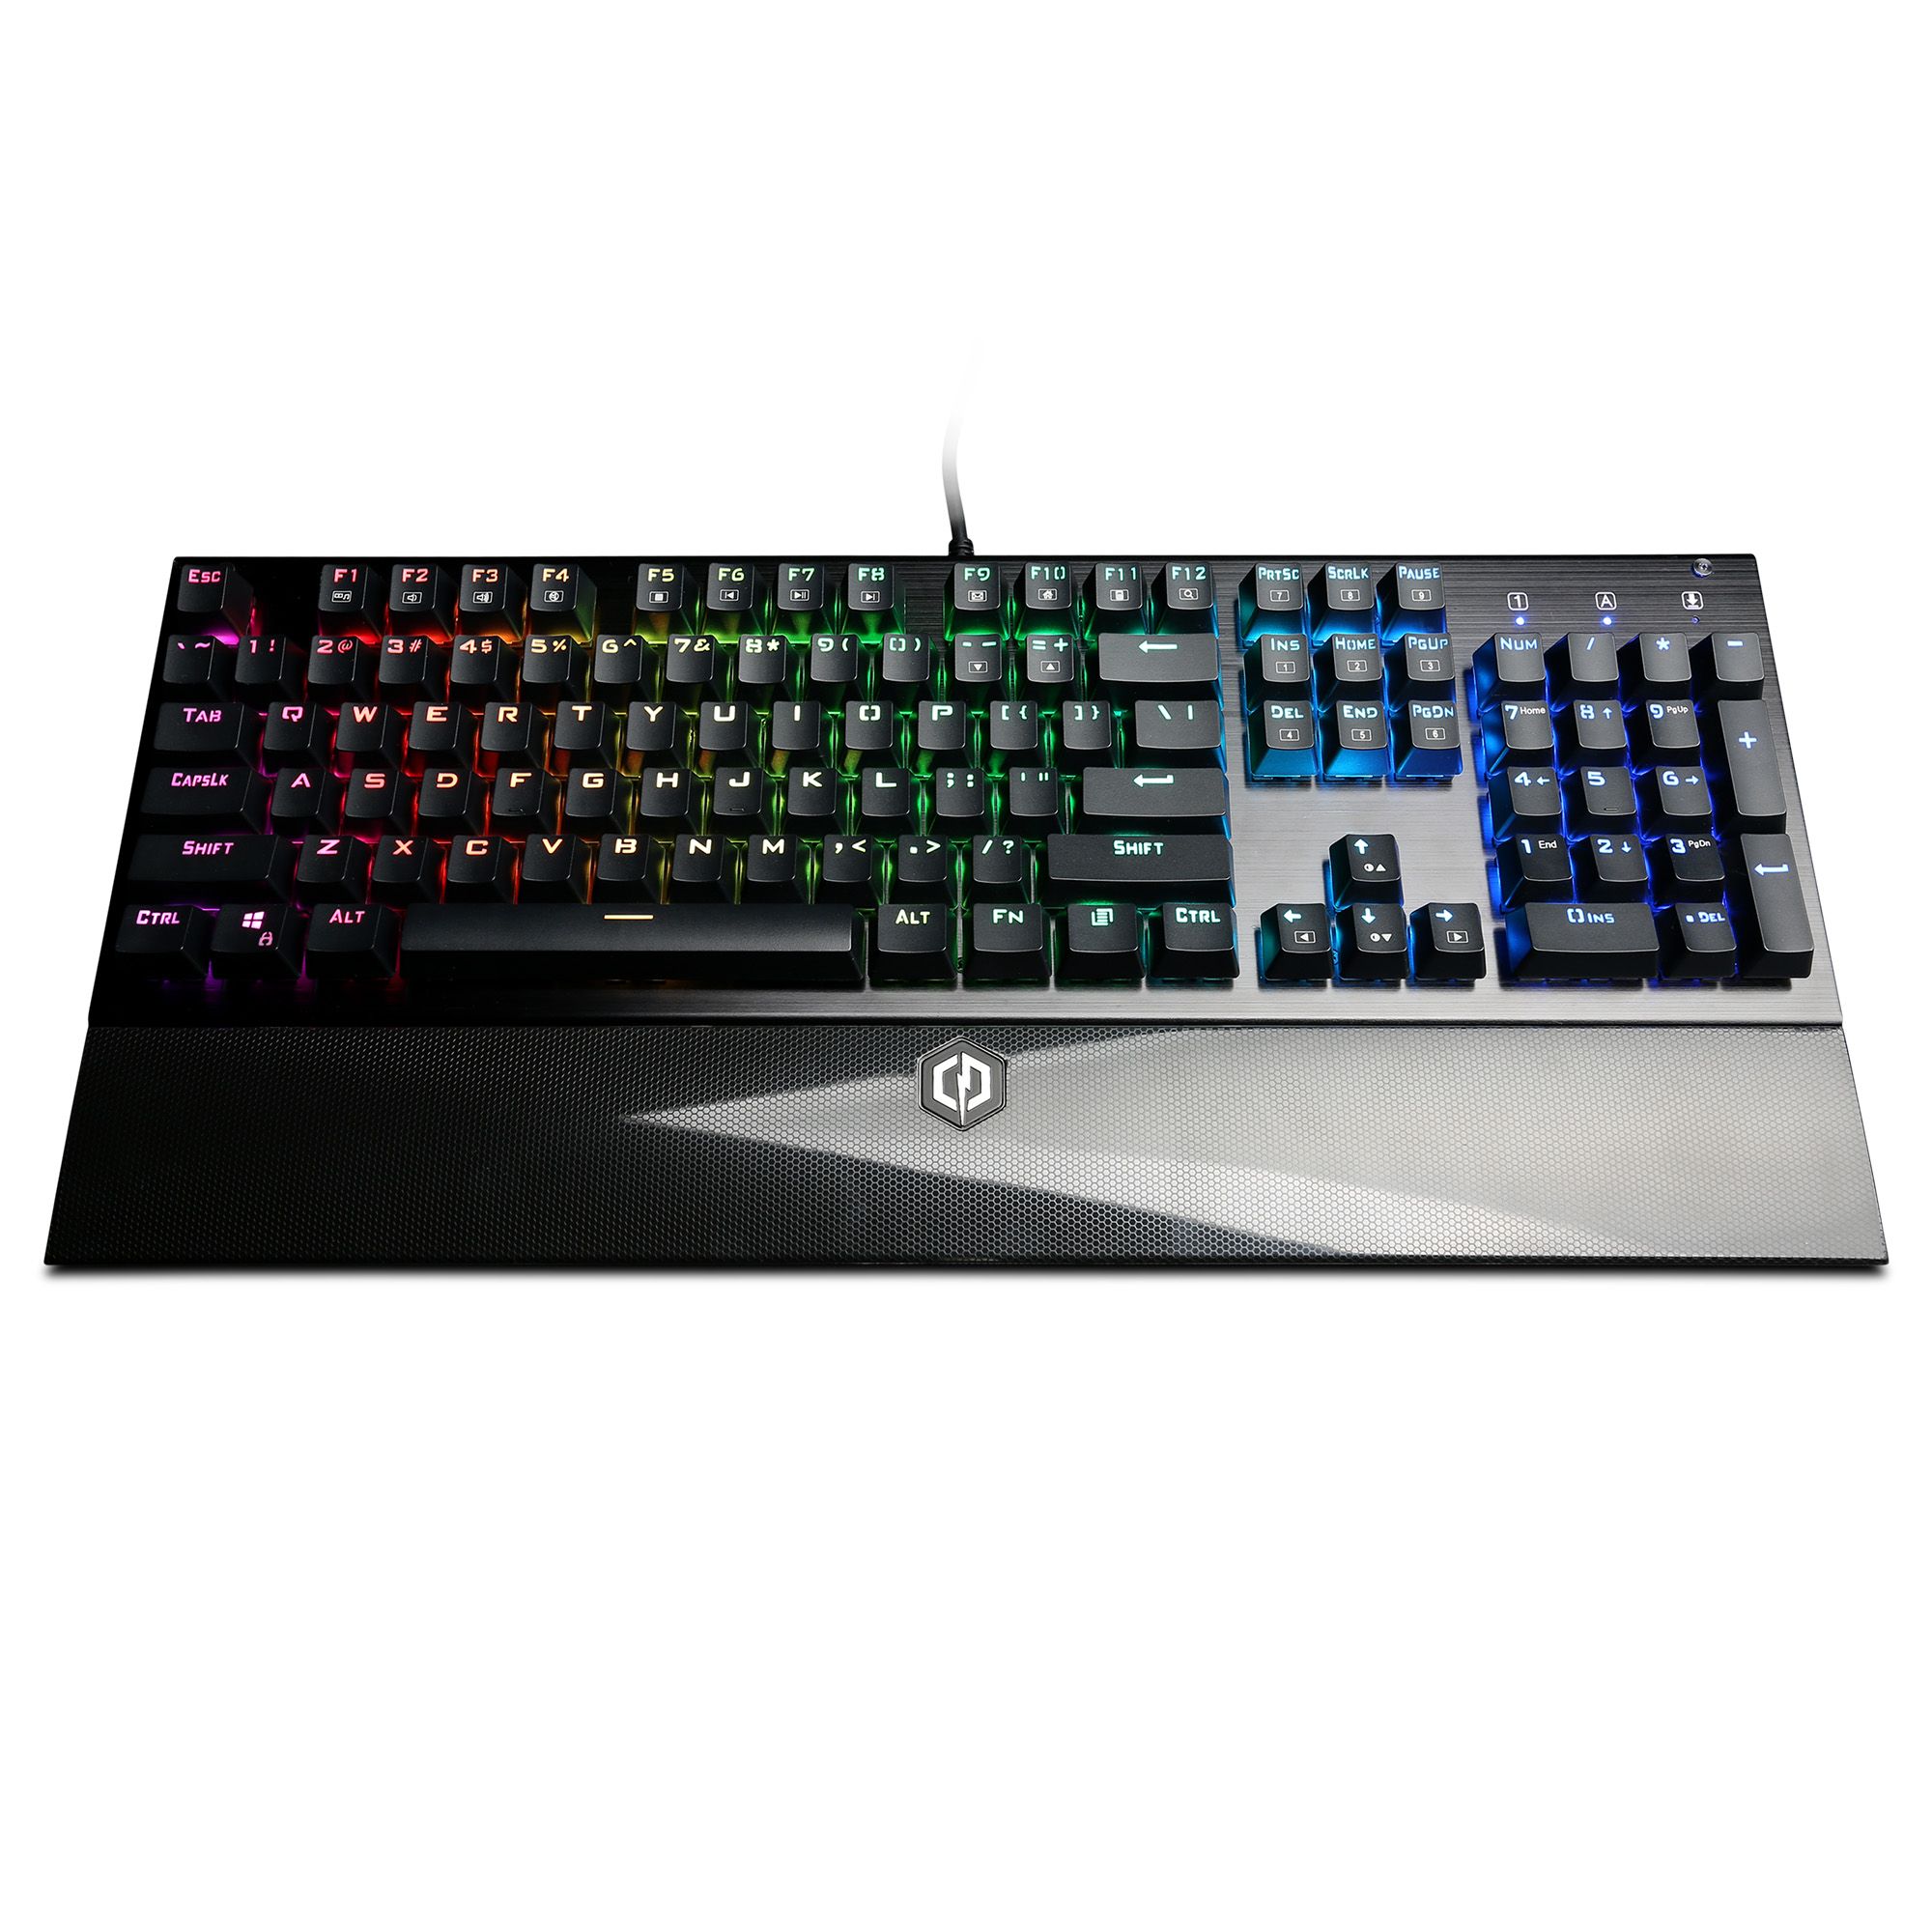 CyberPowerPC Skorpion K2 CPSK304 Mechanical Gaming Keyboard - Black